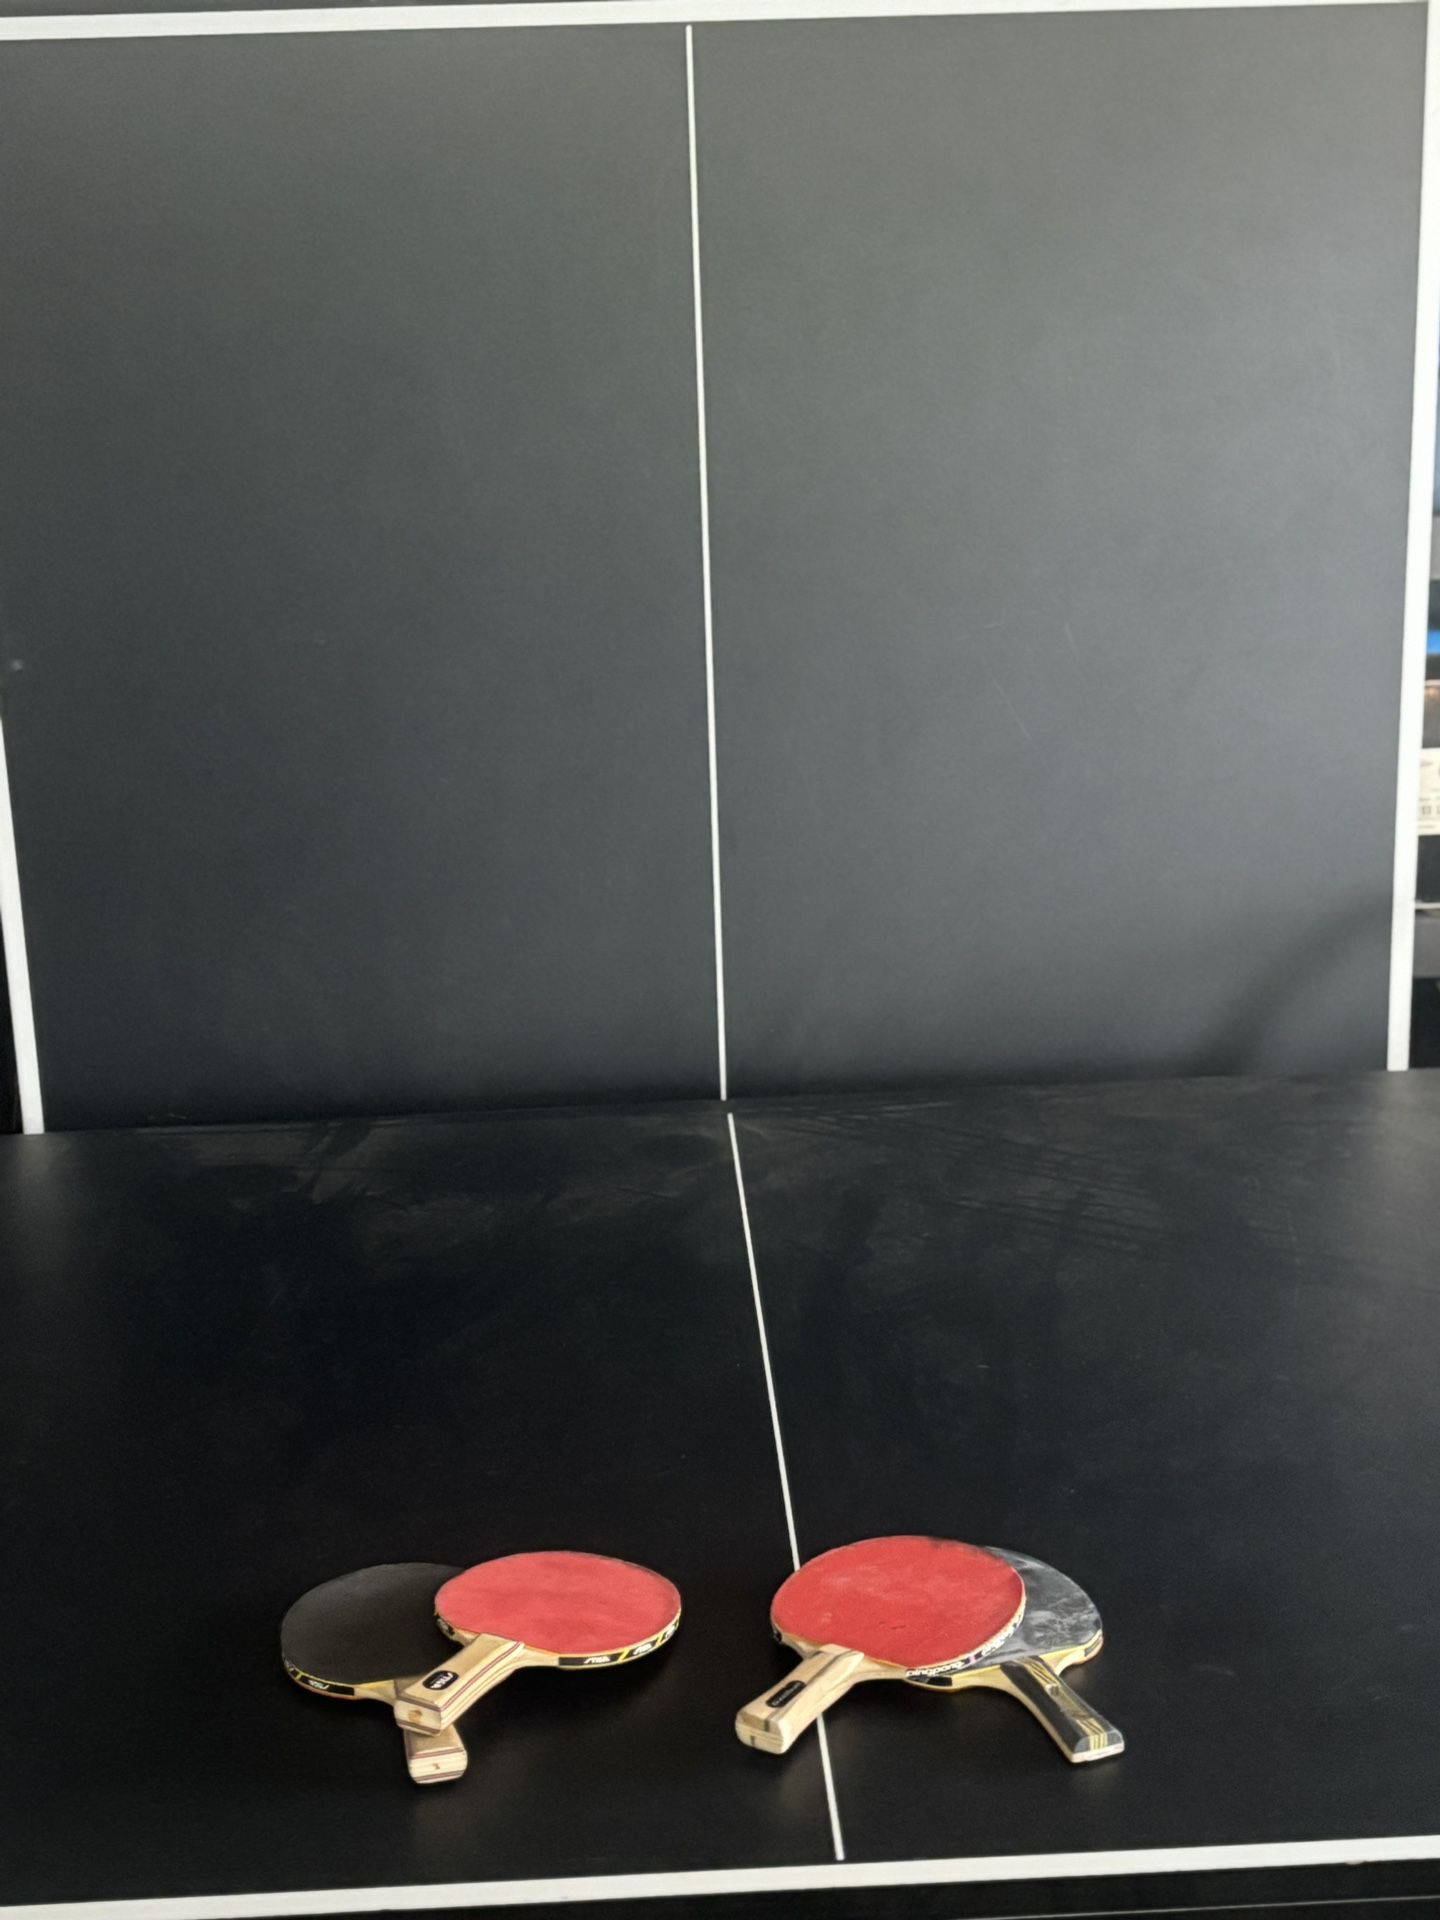 Joola Ping Pong table